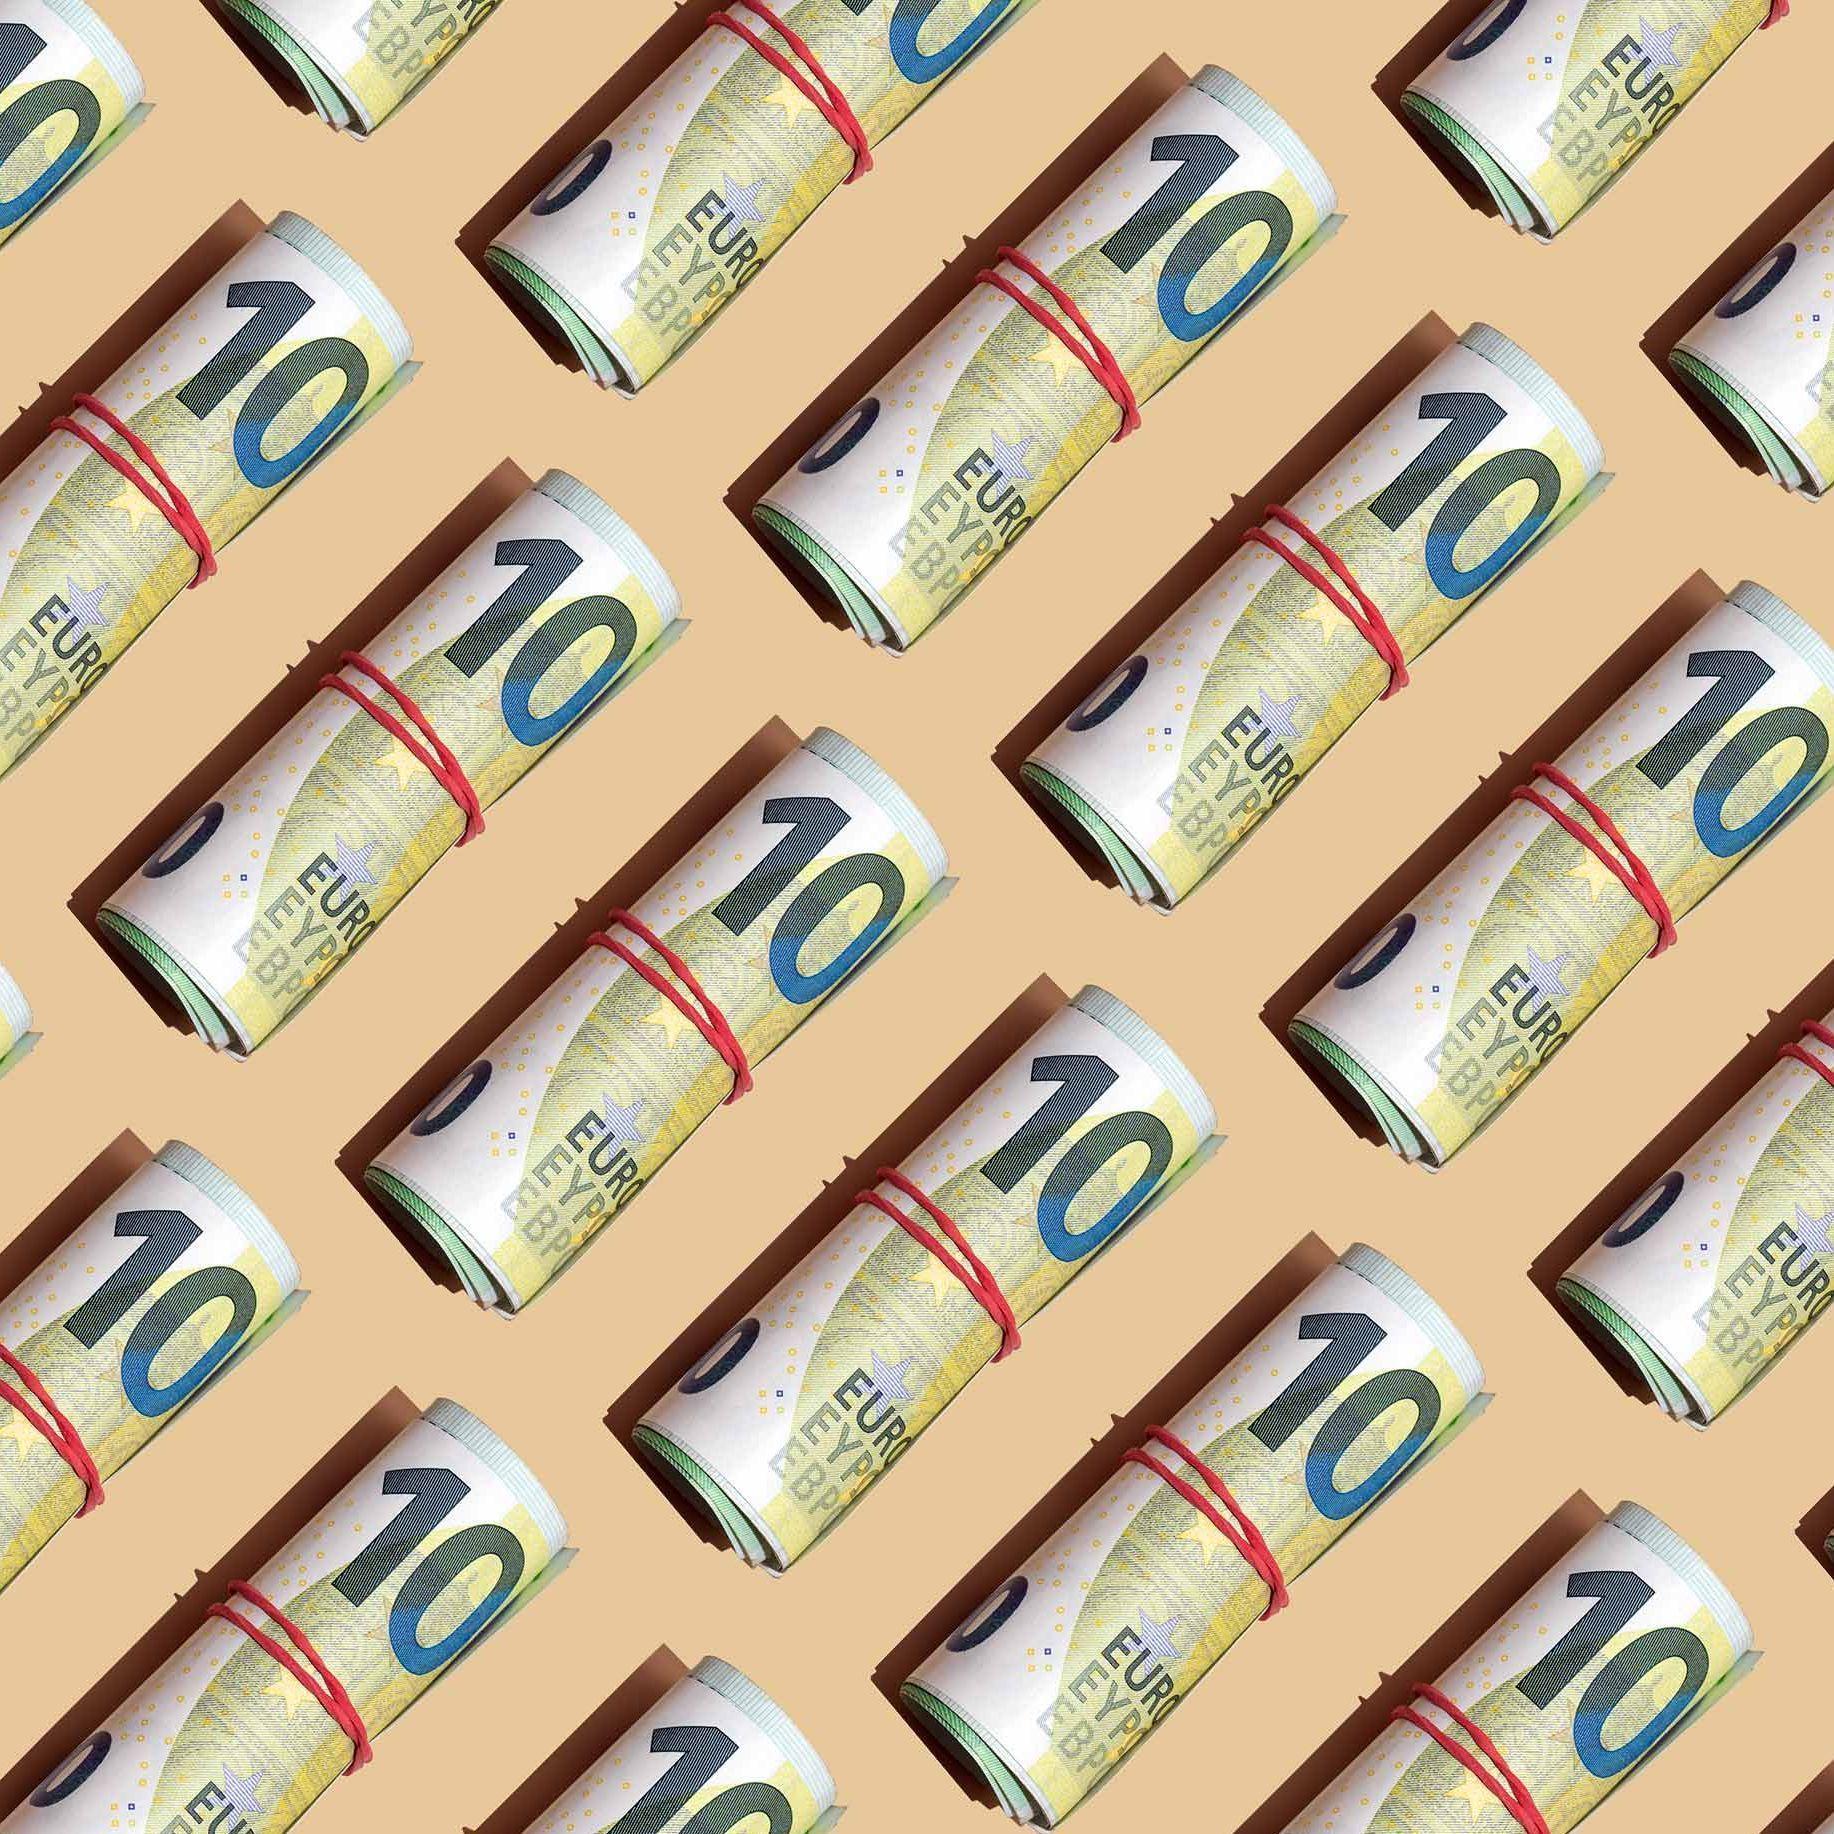 Ein grafisches Bild mit vielen 100 Euro Banknoten mit roten Gummibändern zu Geldbündeln zusammengerollt. Sie liegen aneinandergereiht mit gleichen Abständen auf einem gelben Untergrund.